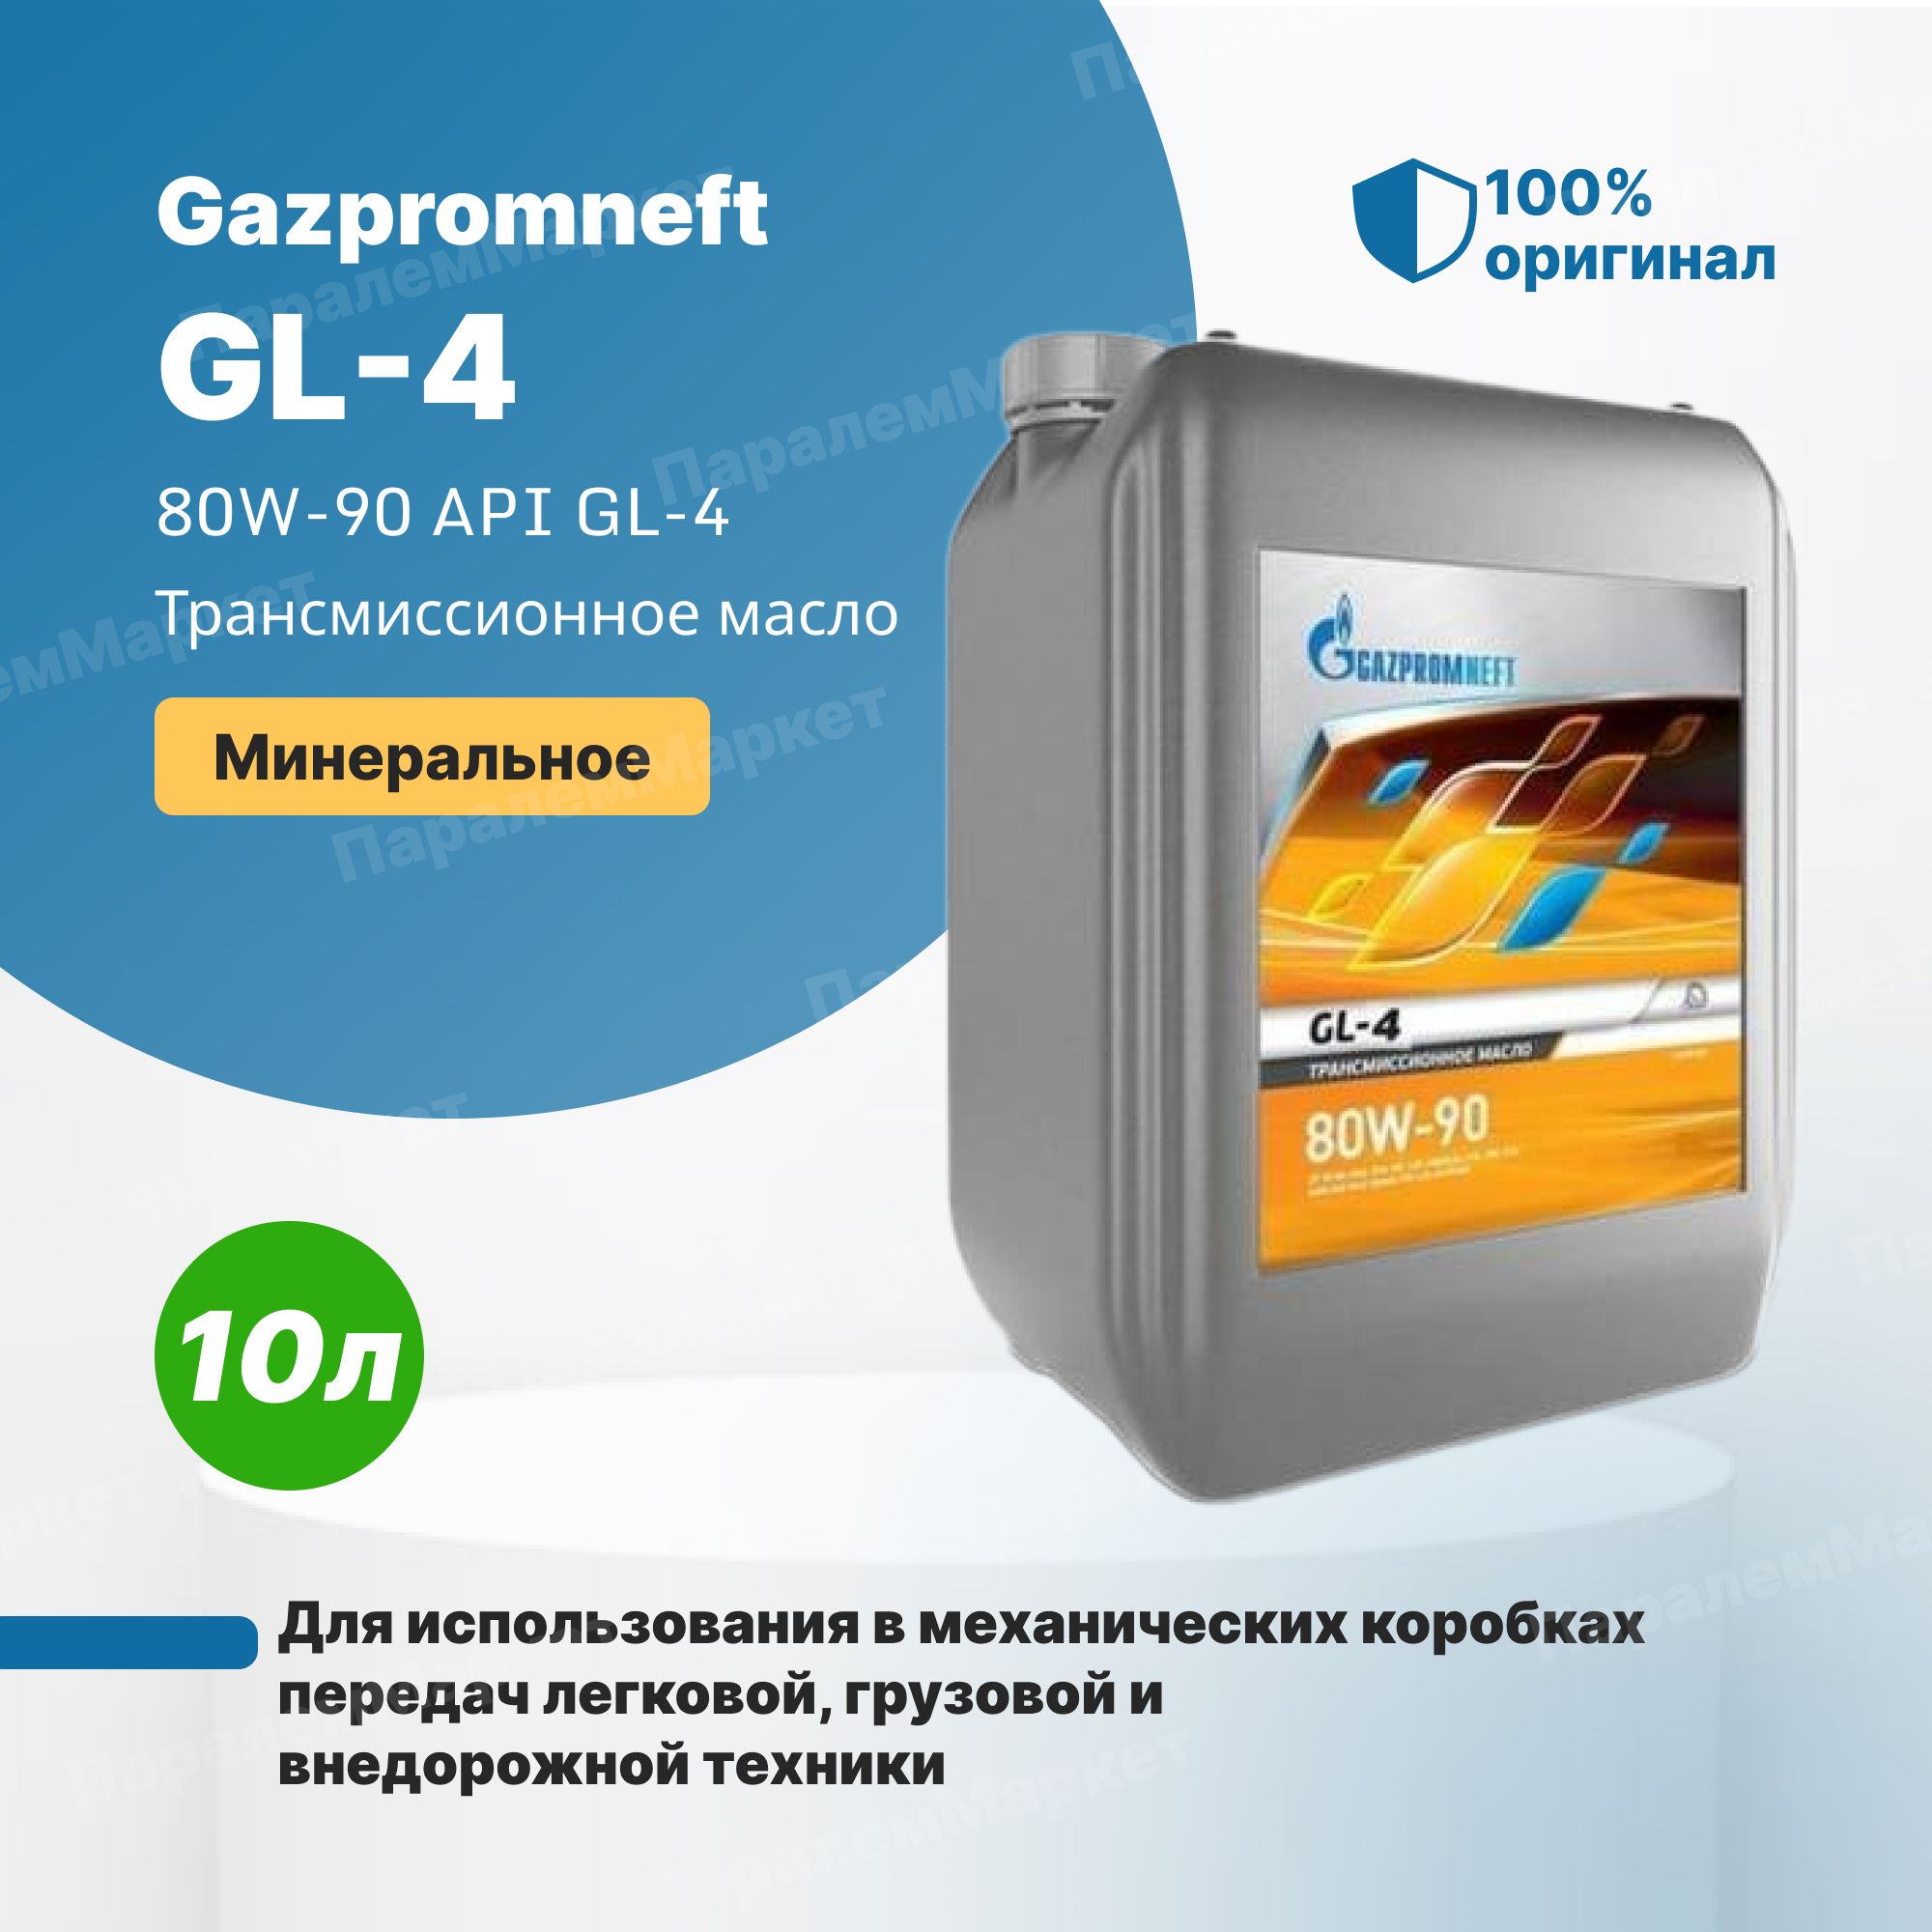 Gazpromneft gl-4 80w90 4л. Gazpromneft gl-4 80w-90. Gl5 80/90 Gazpromneft. Газпромнефть 80w90 gl-4.